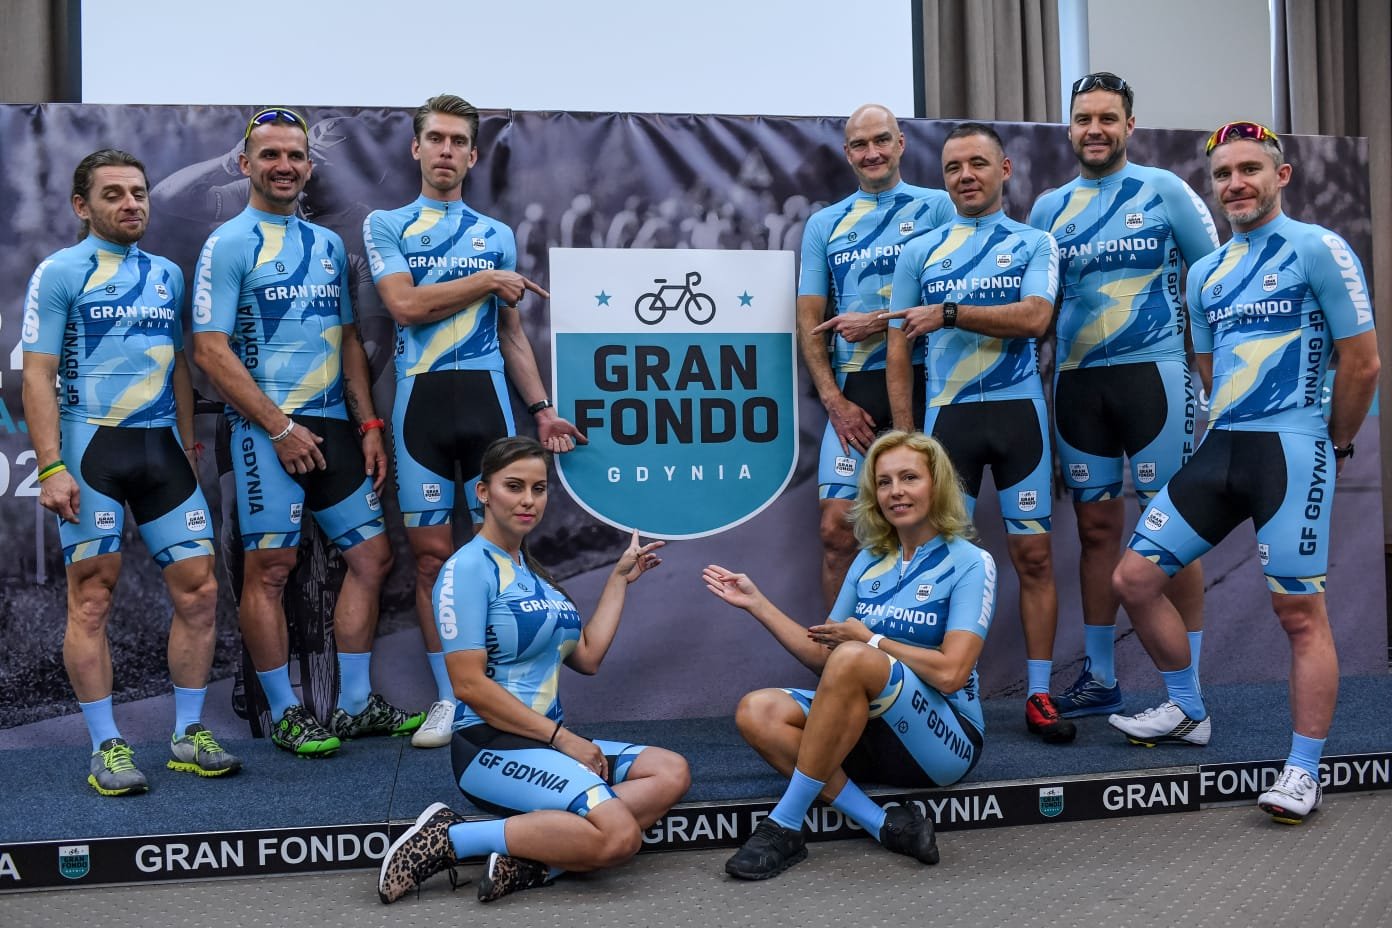 Wyścigi Gran Fondo odbędą się w tym roku w Gdyni i Poznaniu